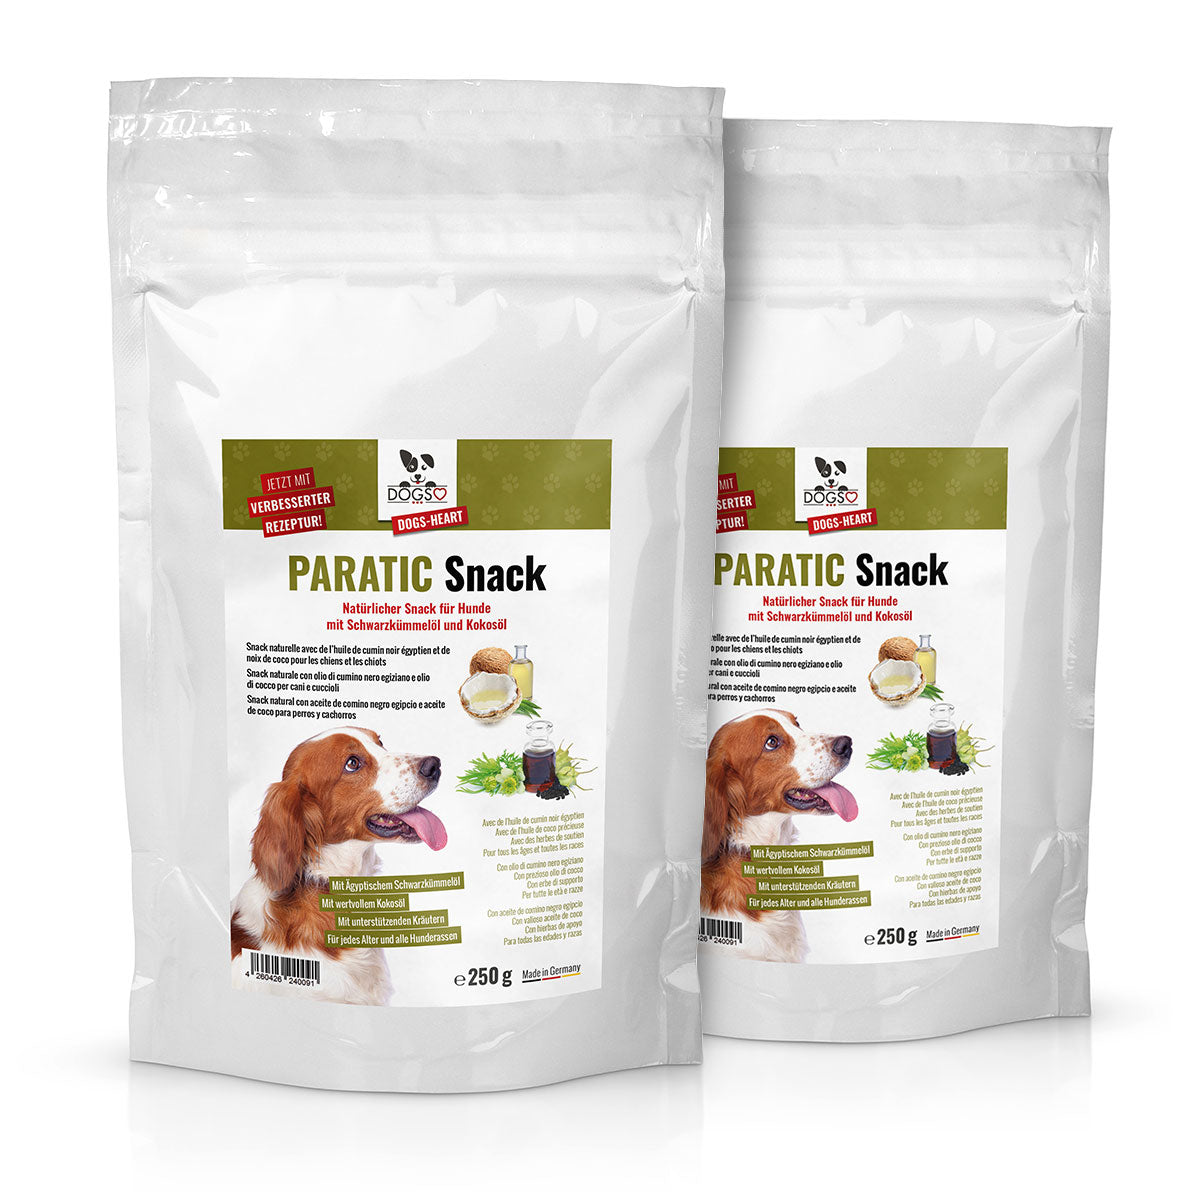 PARATIC Schutz-Snack für Hunde, mit Schwarzkümmelöl und Kokosöl - Sparen mit praktischen 2er- und 3er Sets